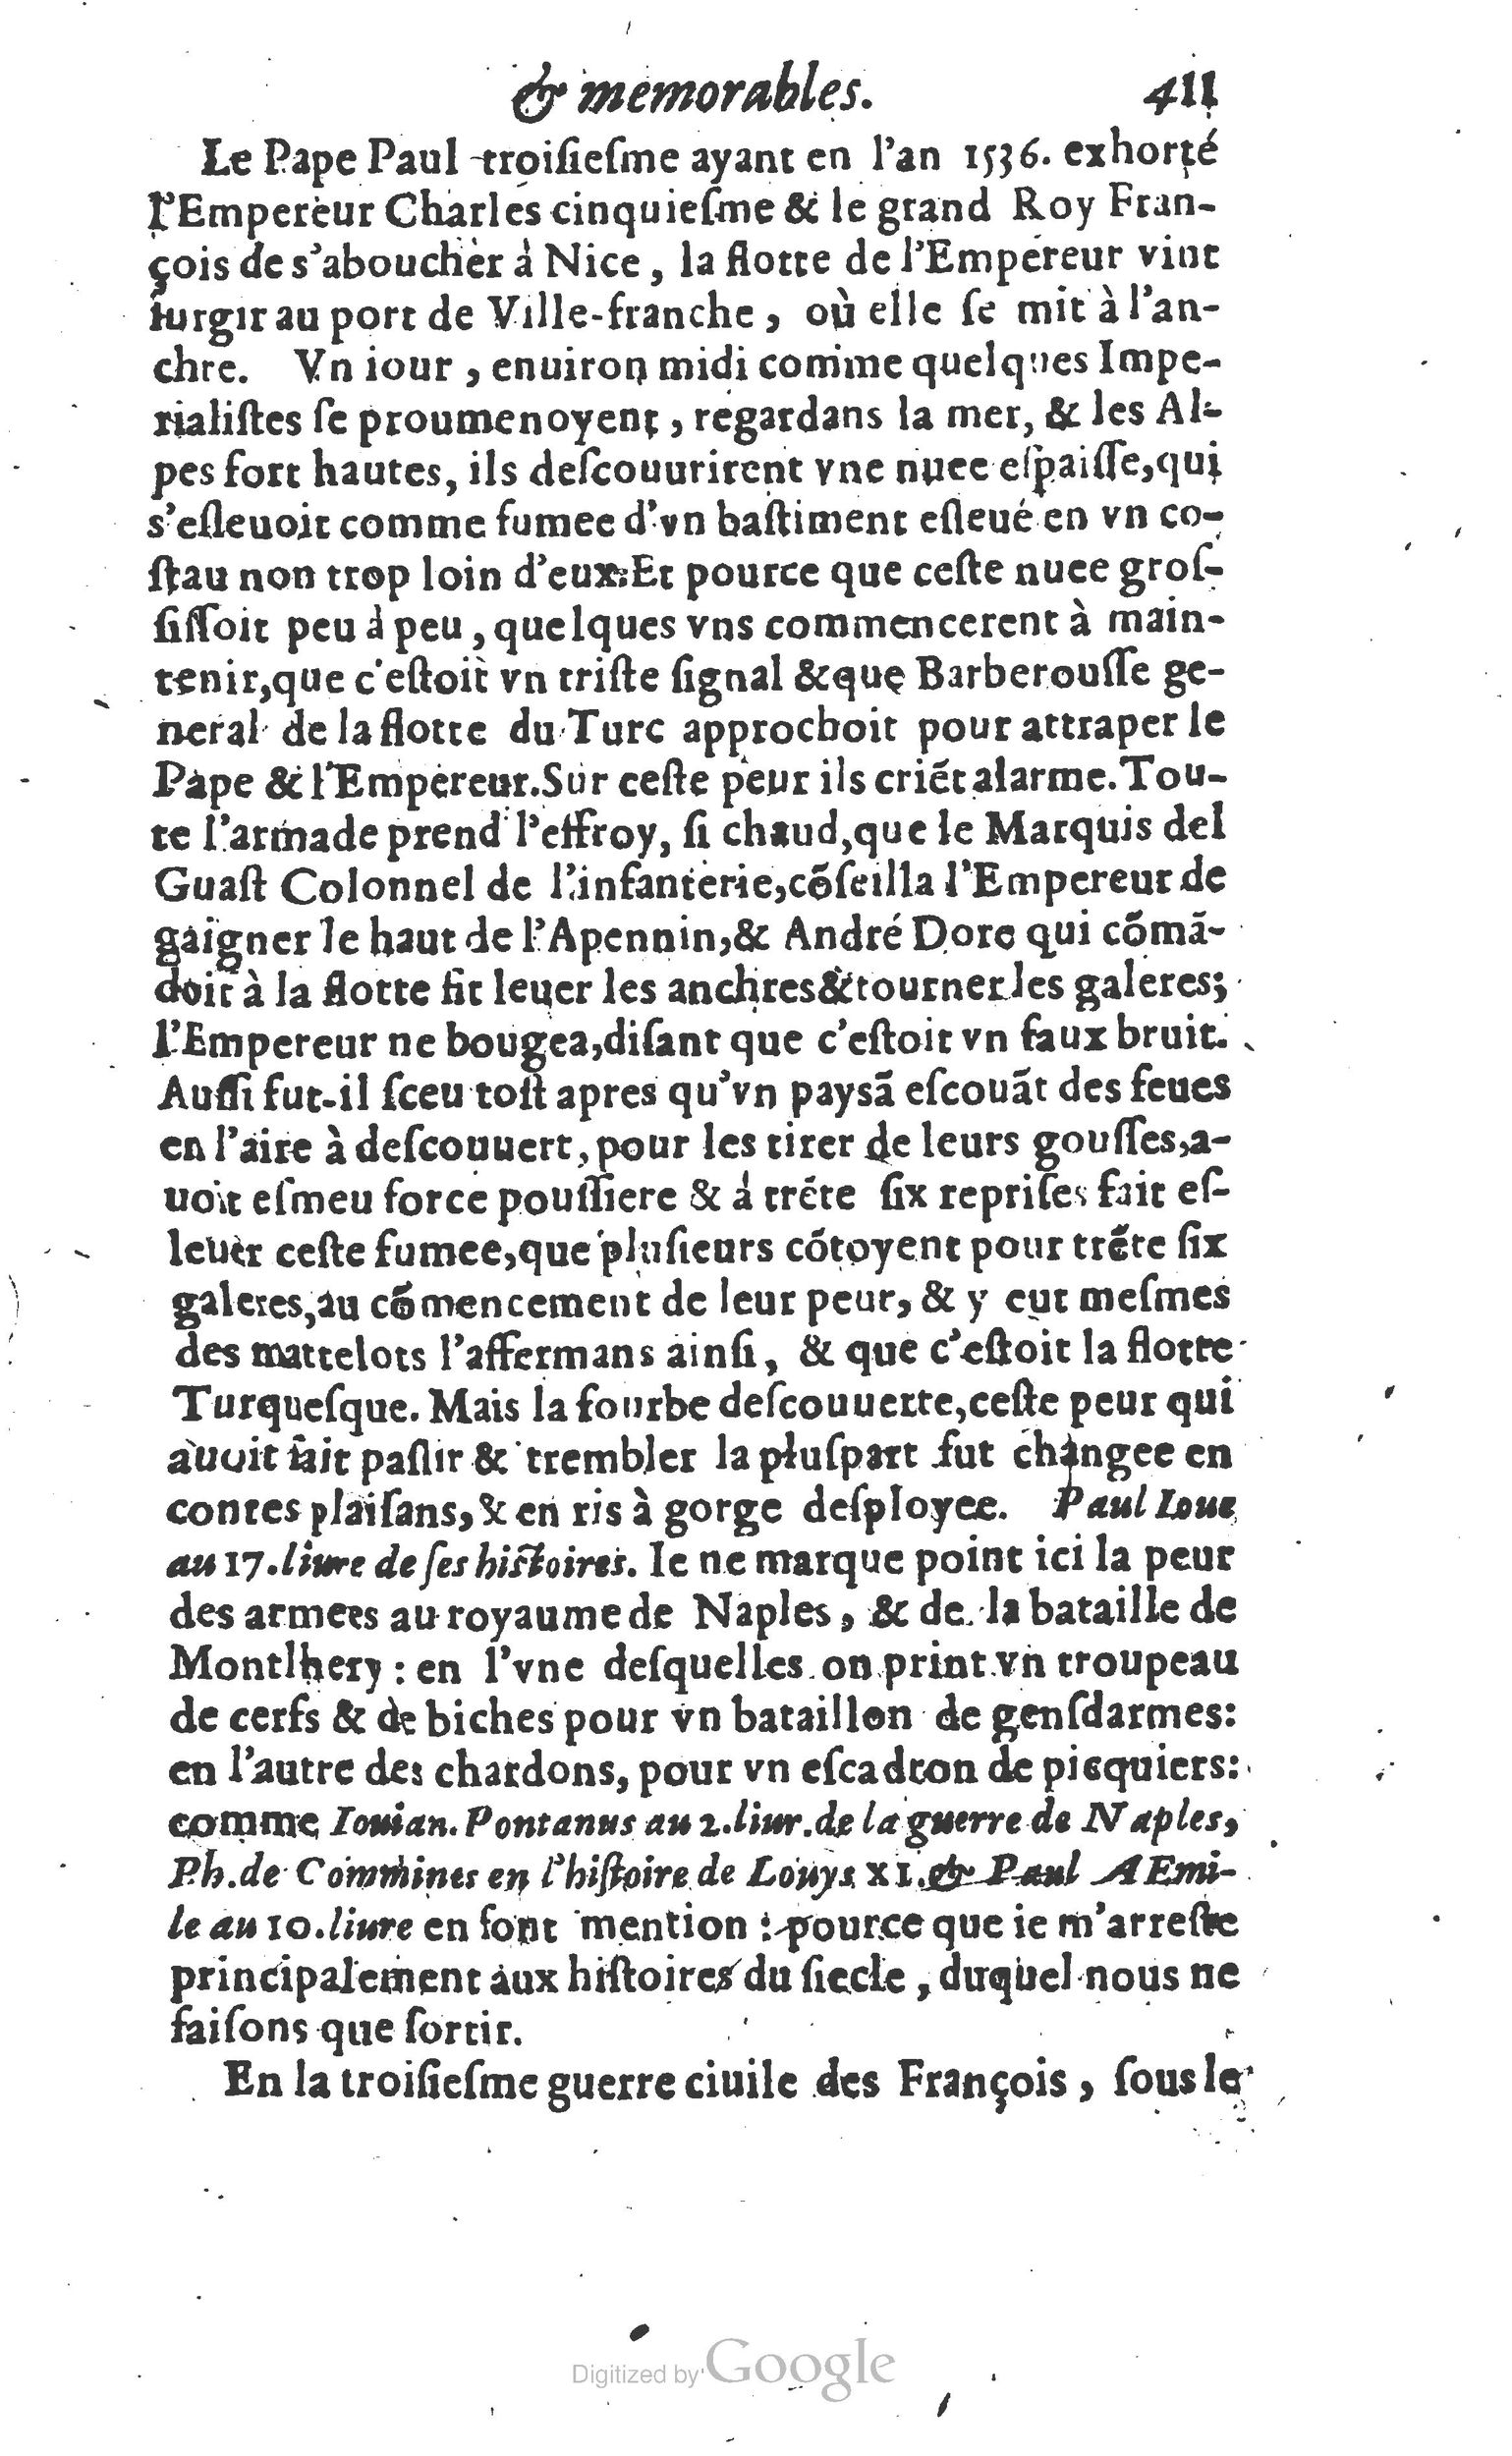 1610 Trésor d’histoires admirables et mémorables de nostre temps Marceau Princeton_Page_0432.jpg